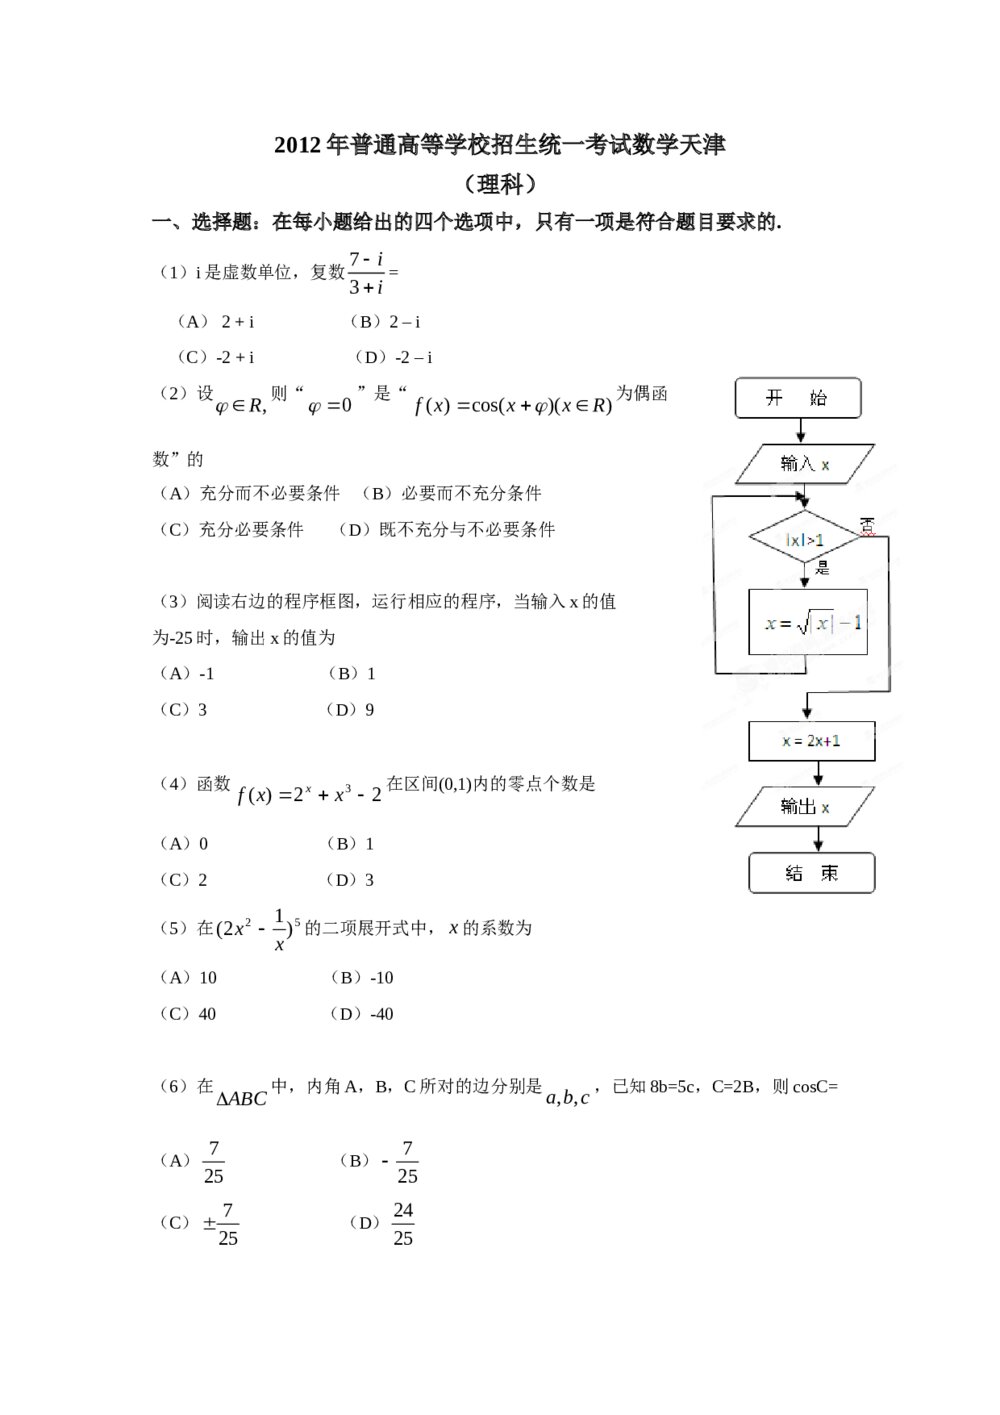 2012年天津高考(理科)数学试题试卷+答案解析1